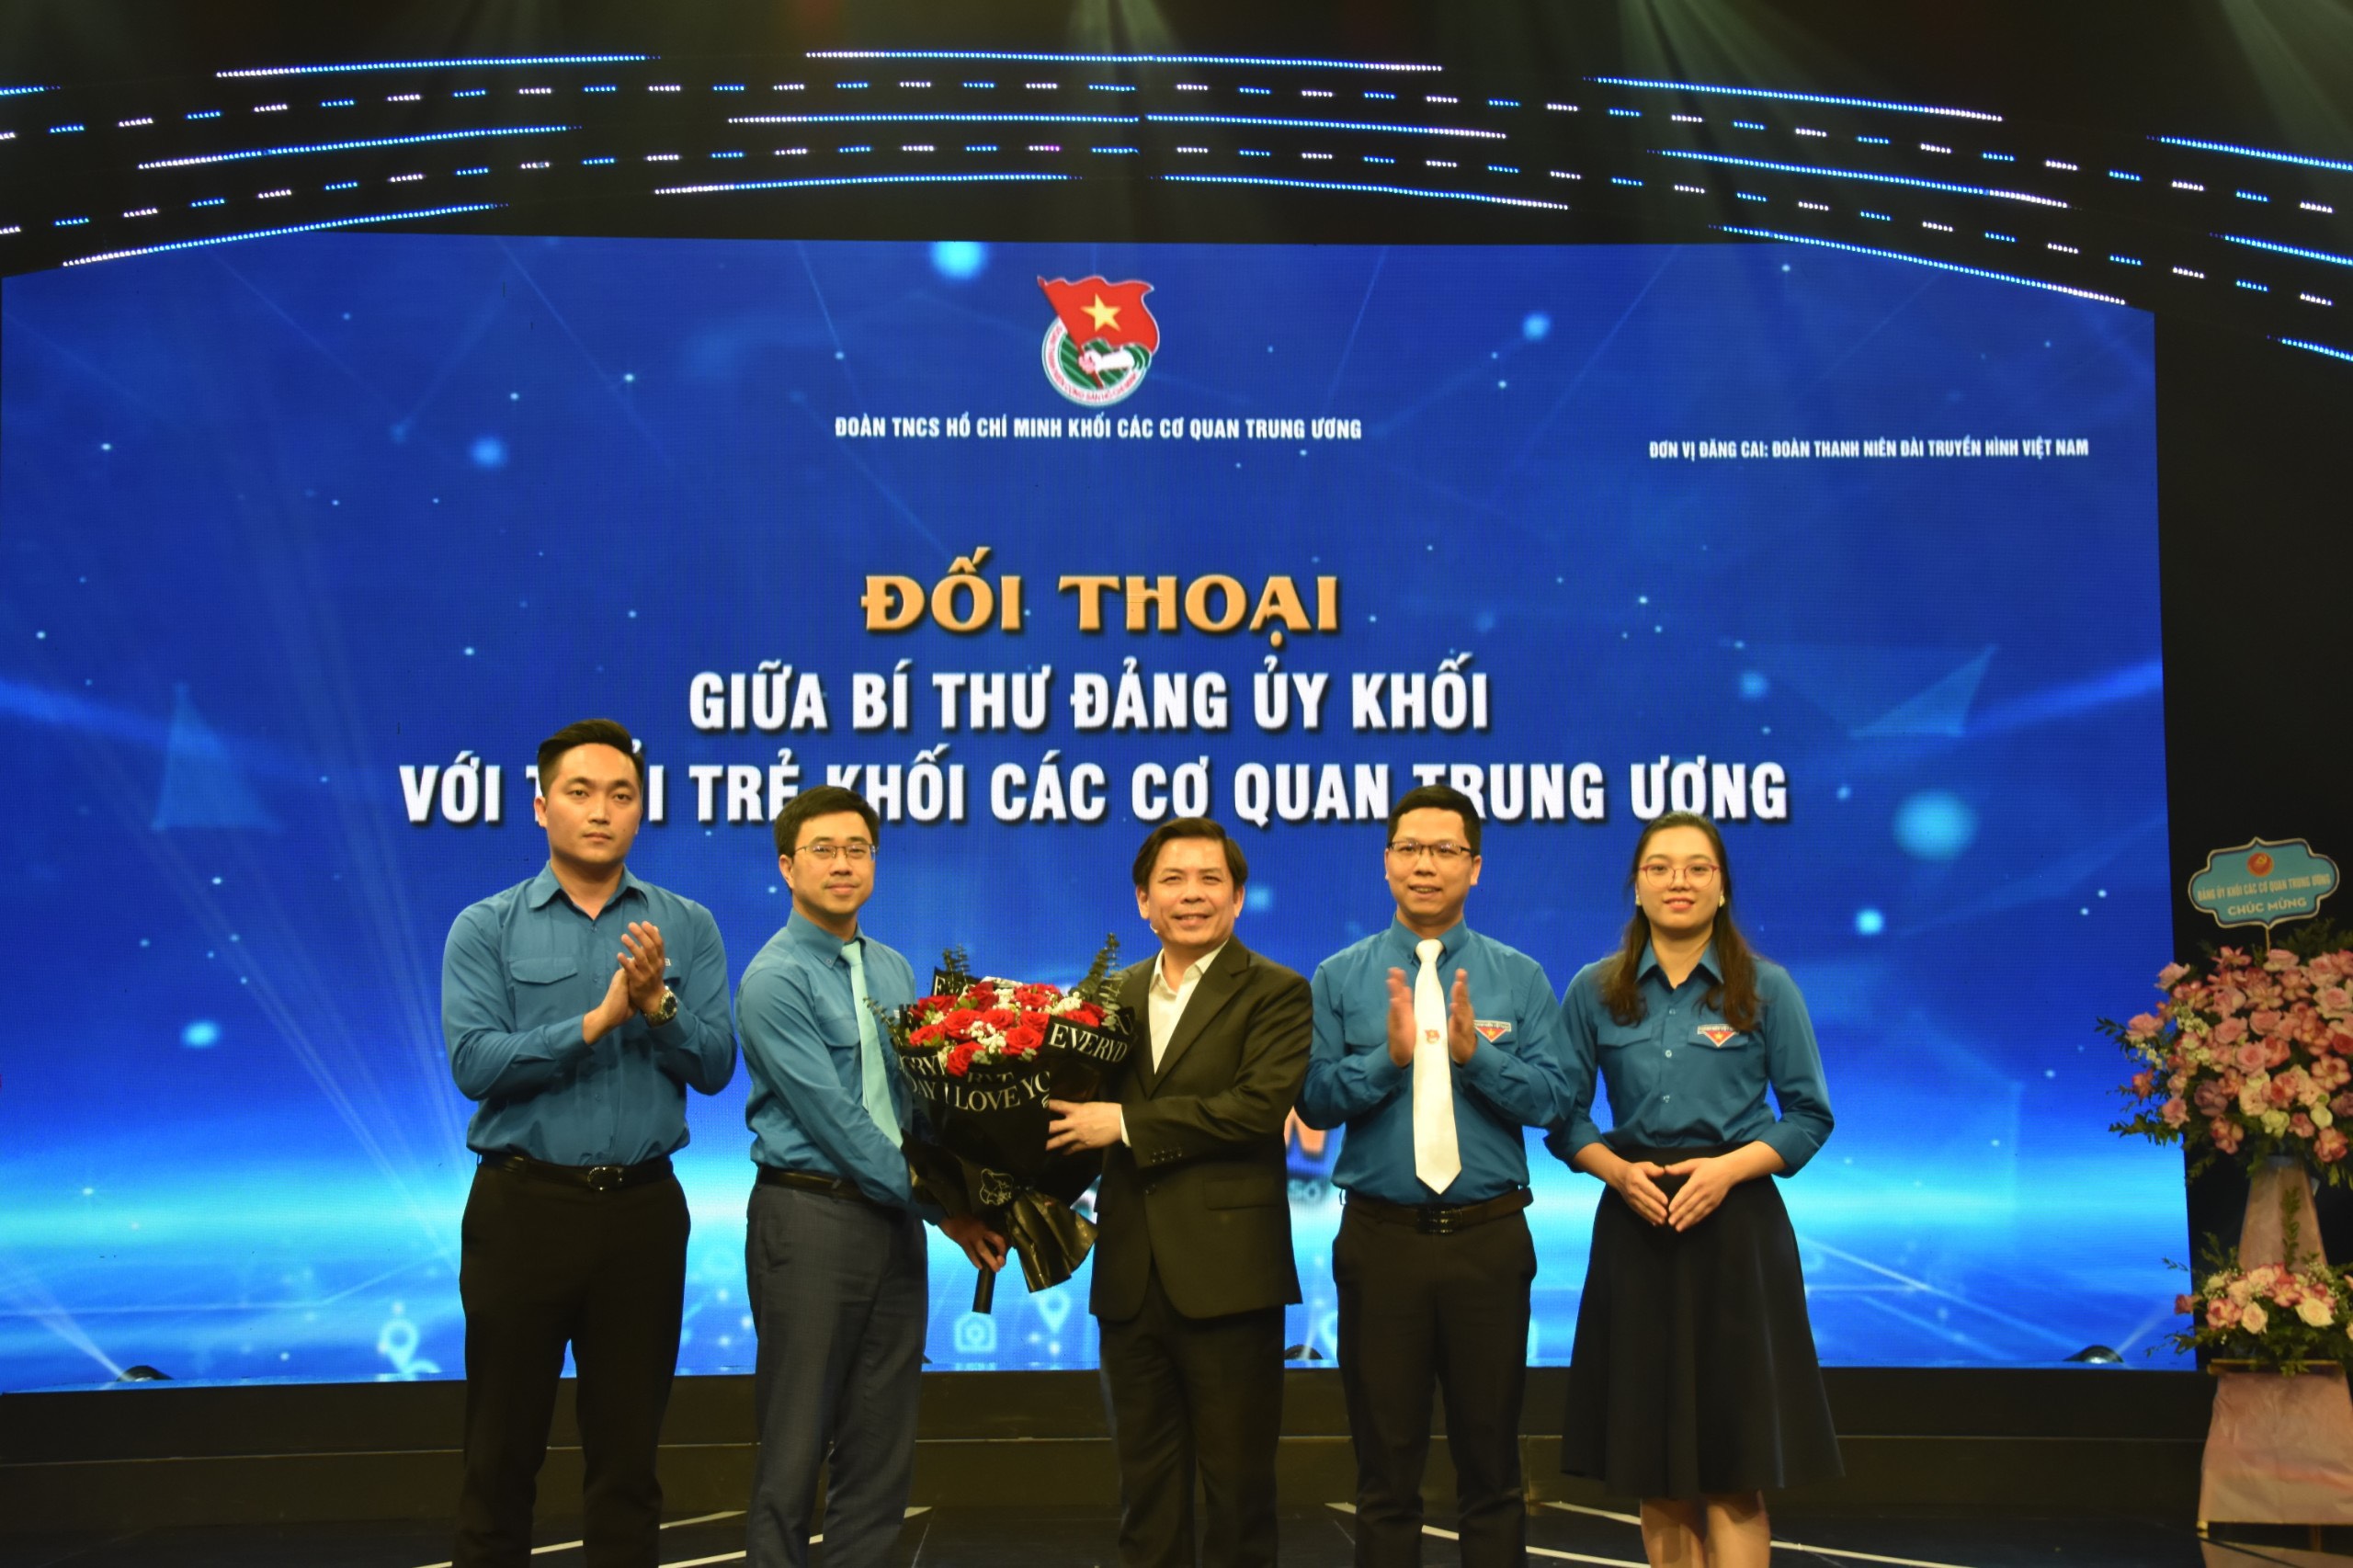 Chương trình kỷ niệm 92 năm Ngày thành lập Đoàn TNCS Hồ Chí Minh